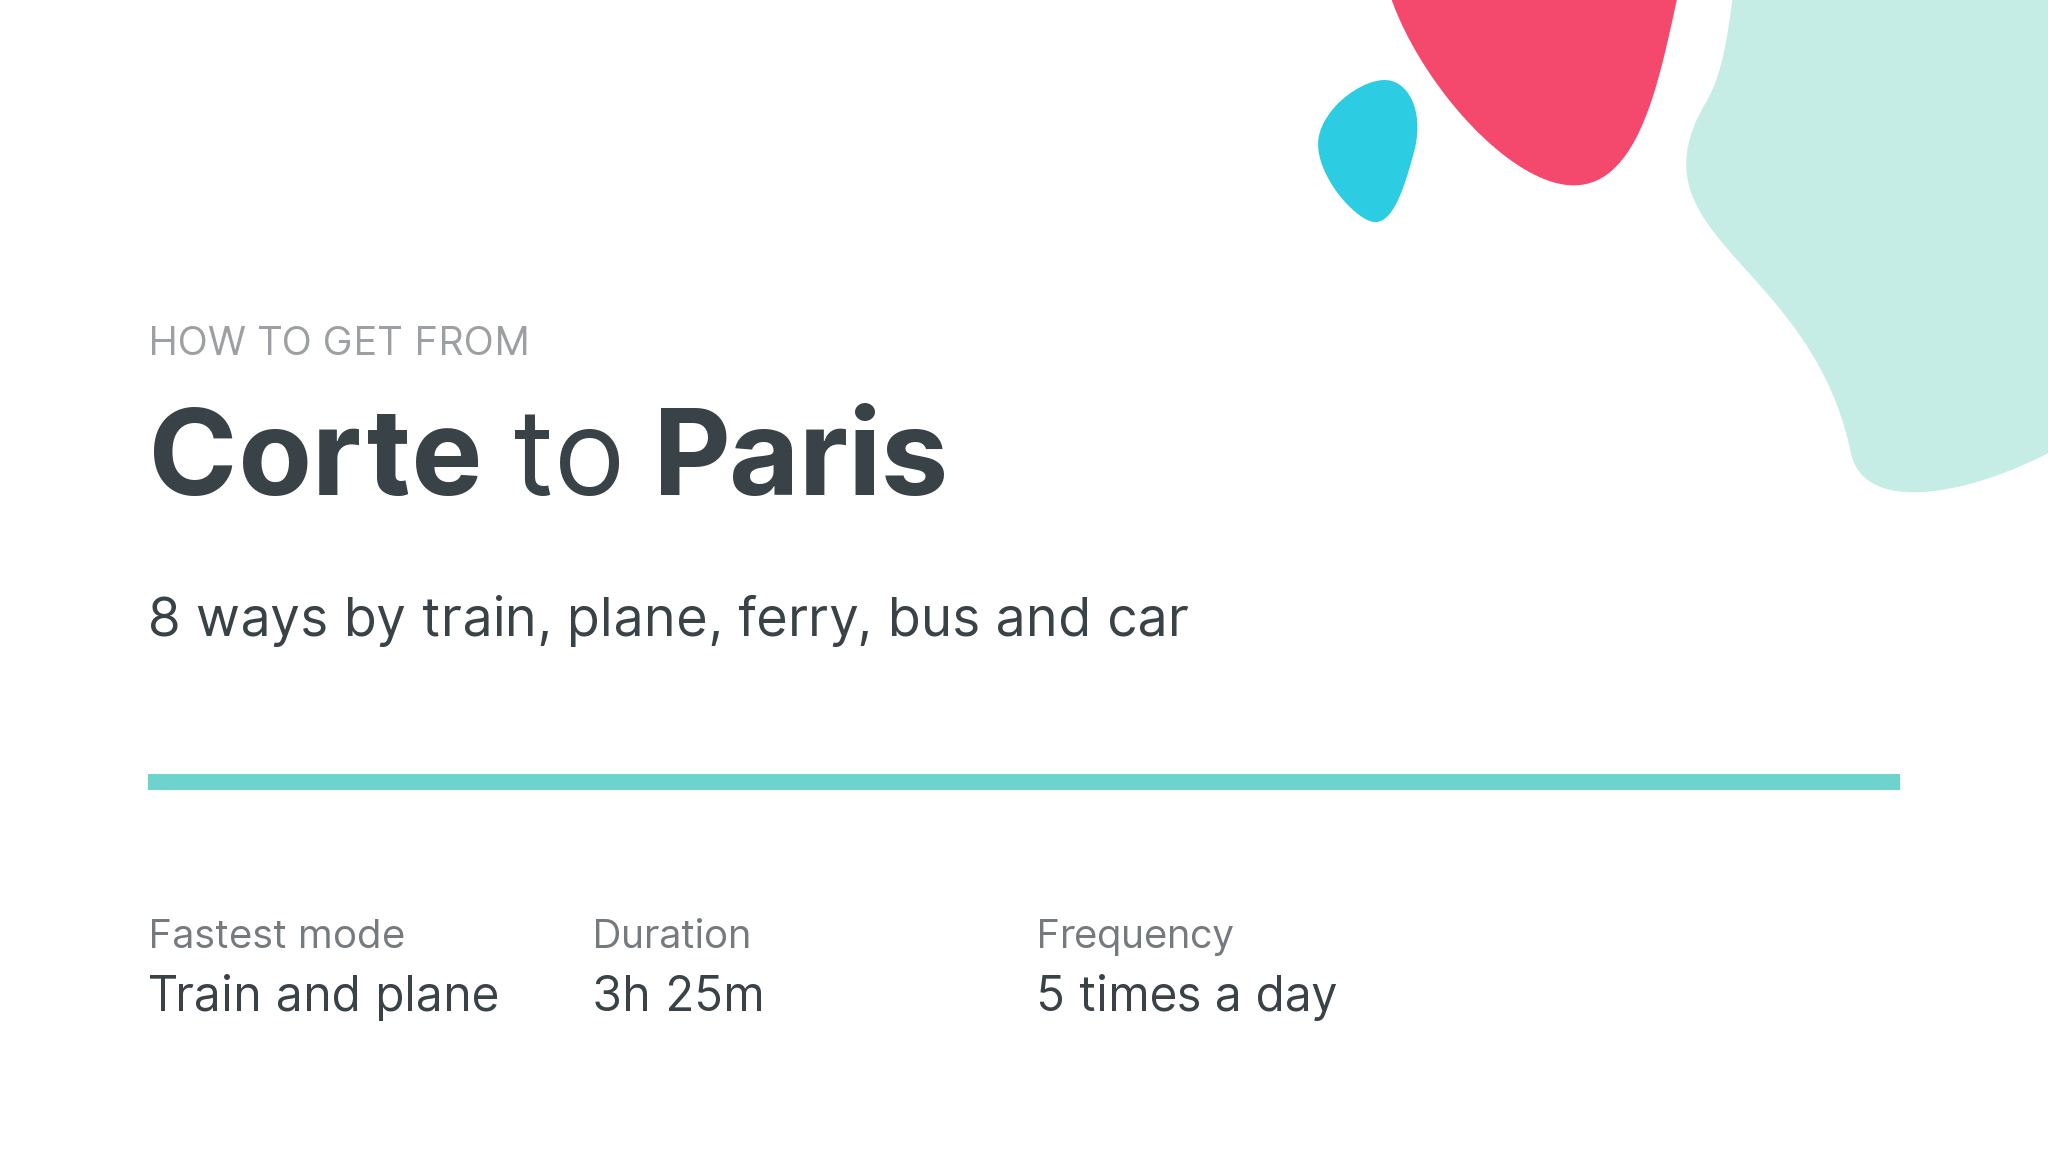 How do I get from Corte to Paris